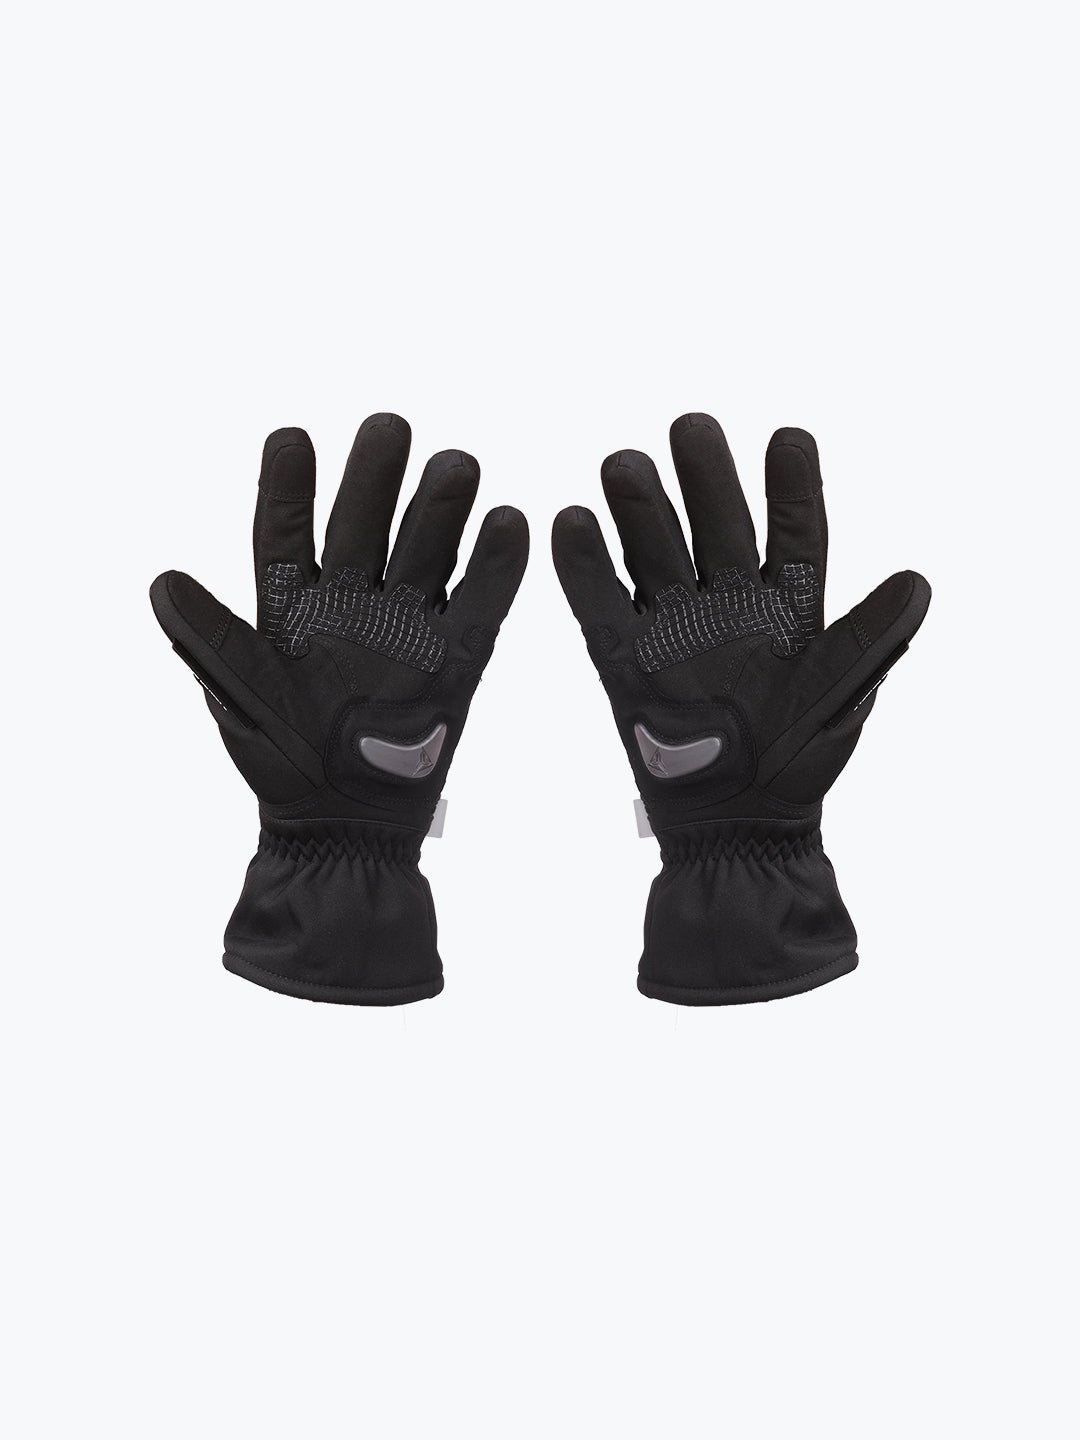 Motowolf Gloves Black Grey 0318